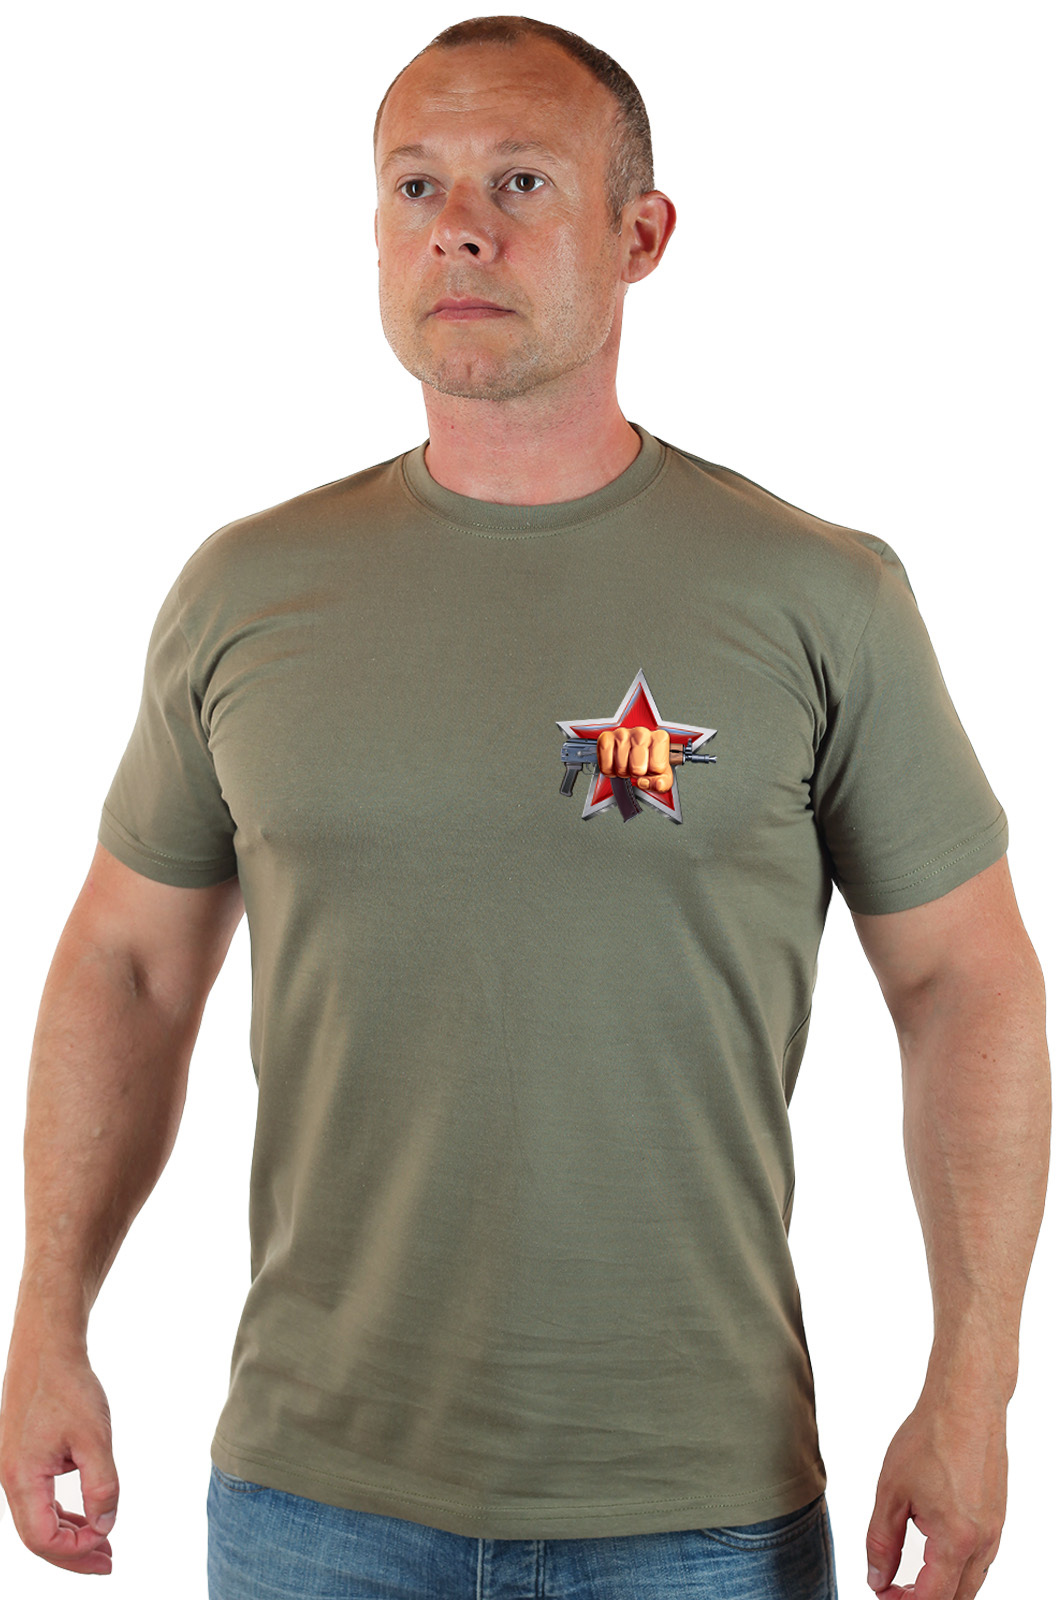 Мужская оригинальная футболка с символикой Спецназа ВВ РФ 